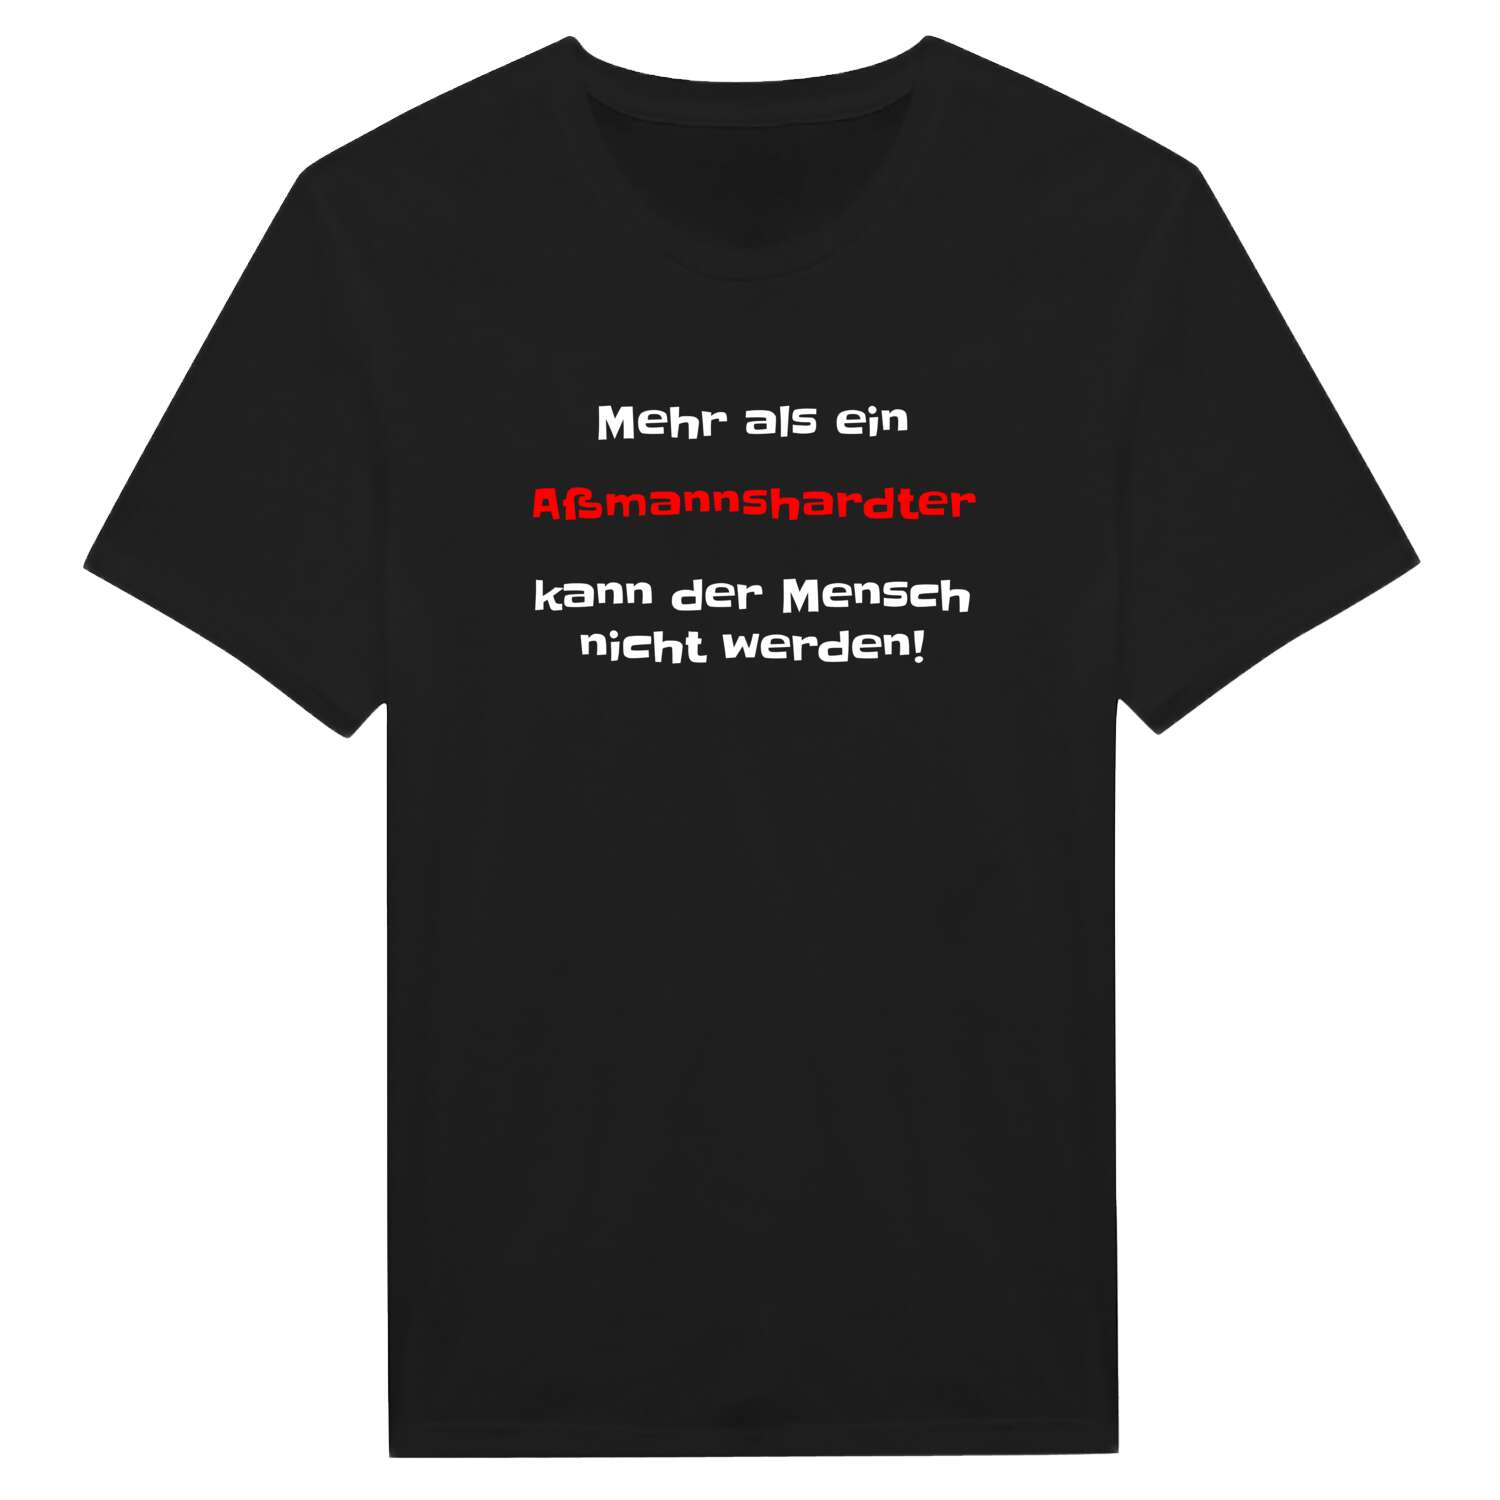 Aßmannshardt T-Shirt »Mehr als ein«